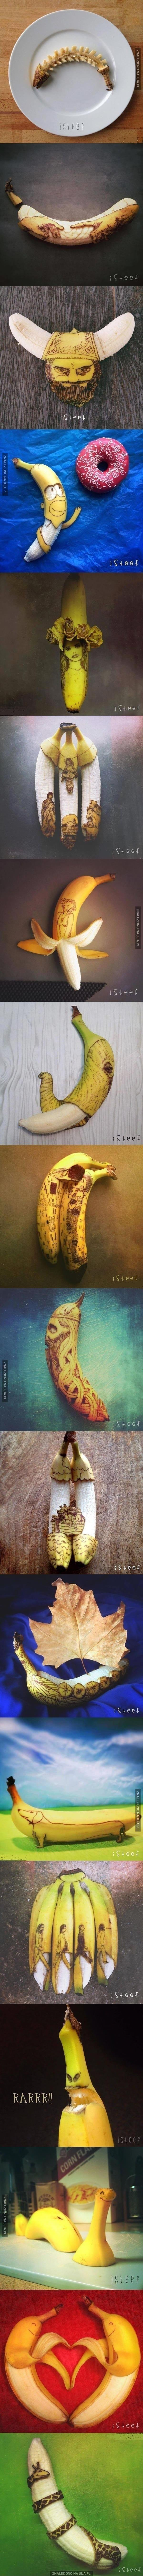 Bananowa sztuka